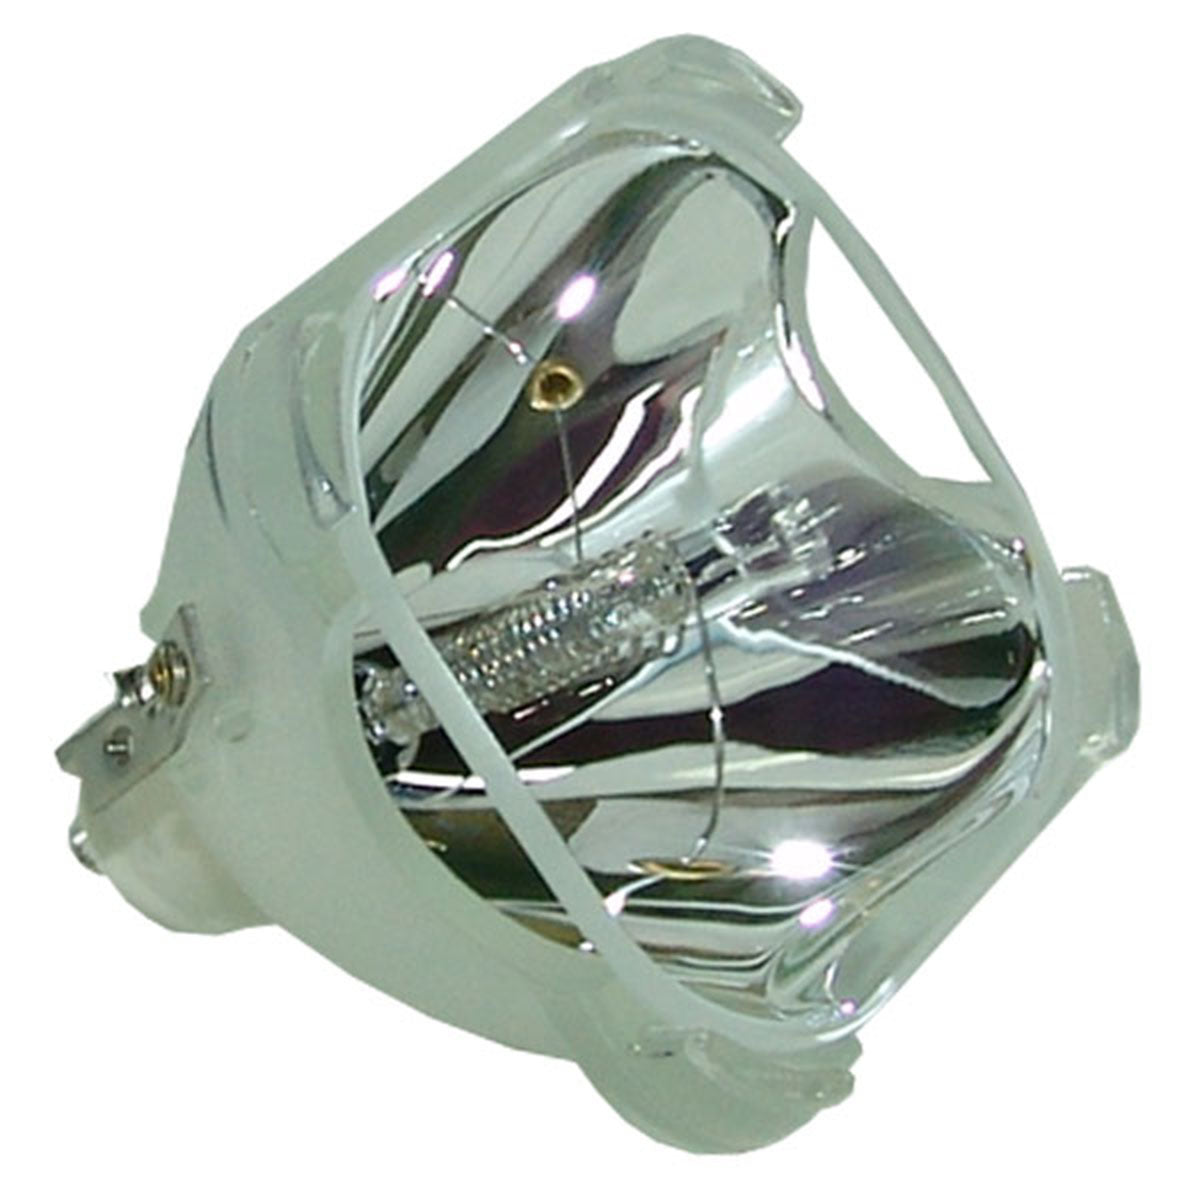 Yokogawa D1500X Osram Projector Bare Lamp